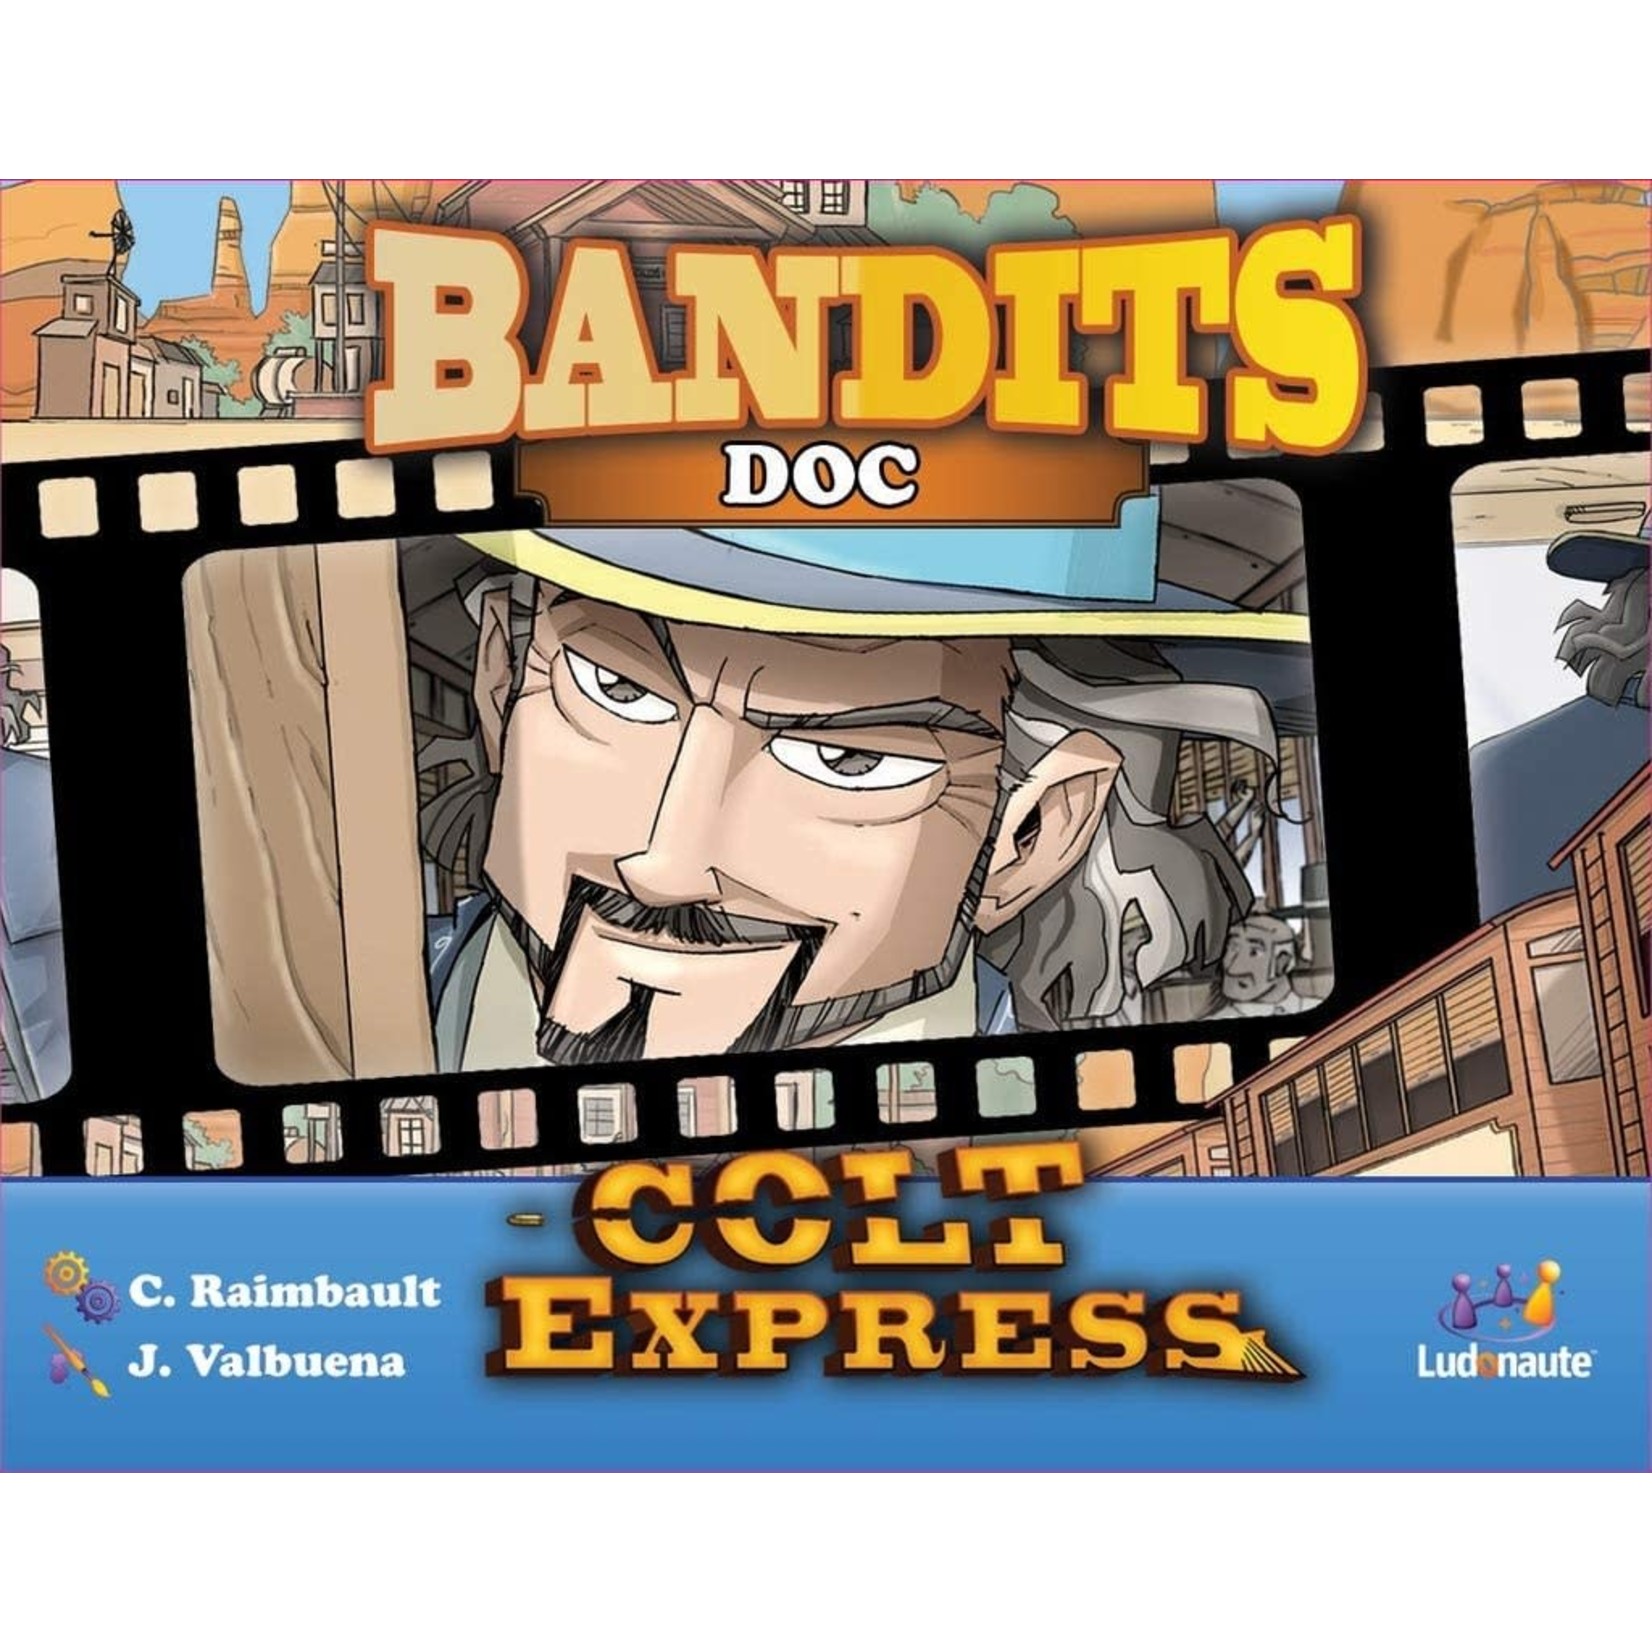 Colt Express Bandit Pack: Doc Expansion